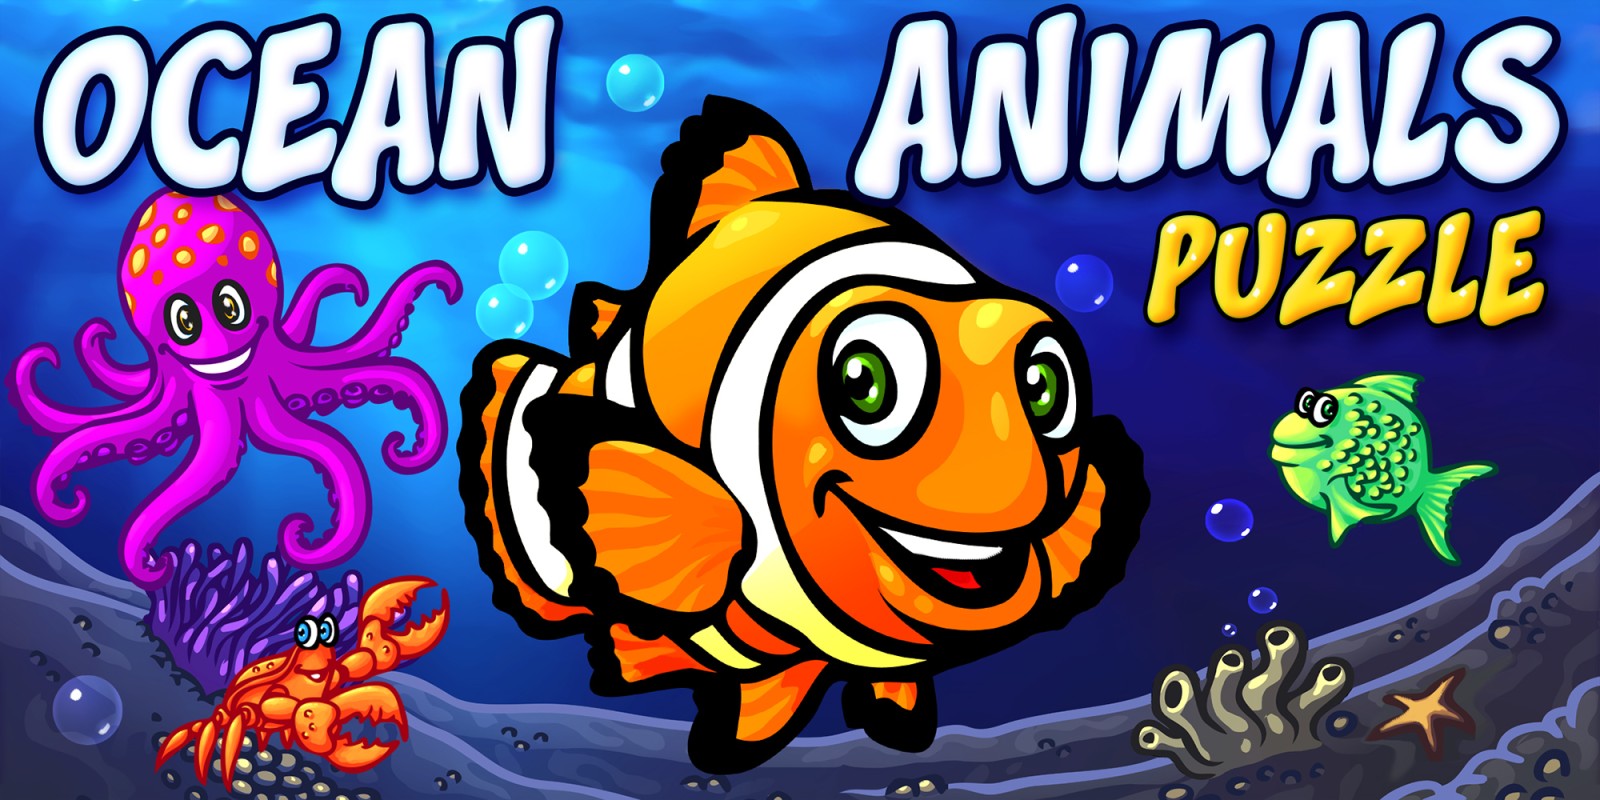 Ocean Animals Puzzle - Vorschule Kinderspiel Ozean Tierpuzzle Bildung Lernspiel Tiere Puzzles für Kinder & Babies Steckpuzzle